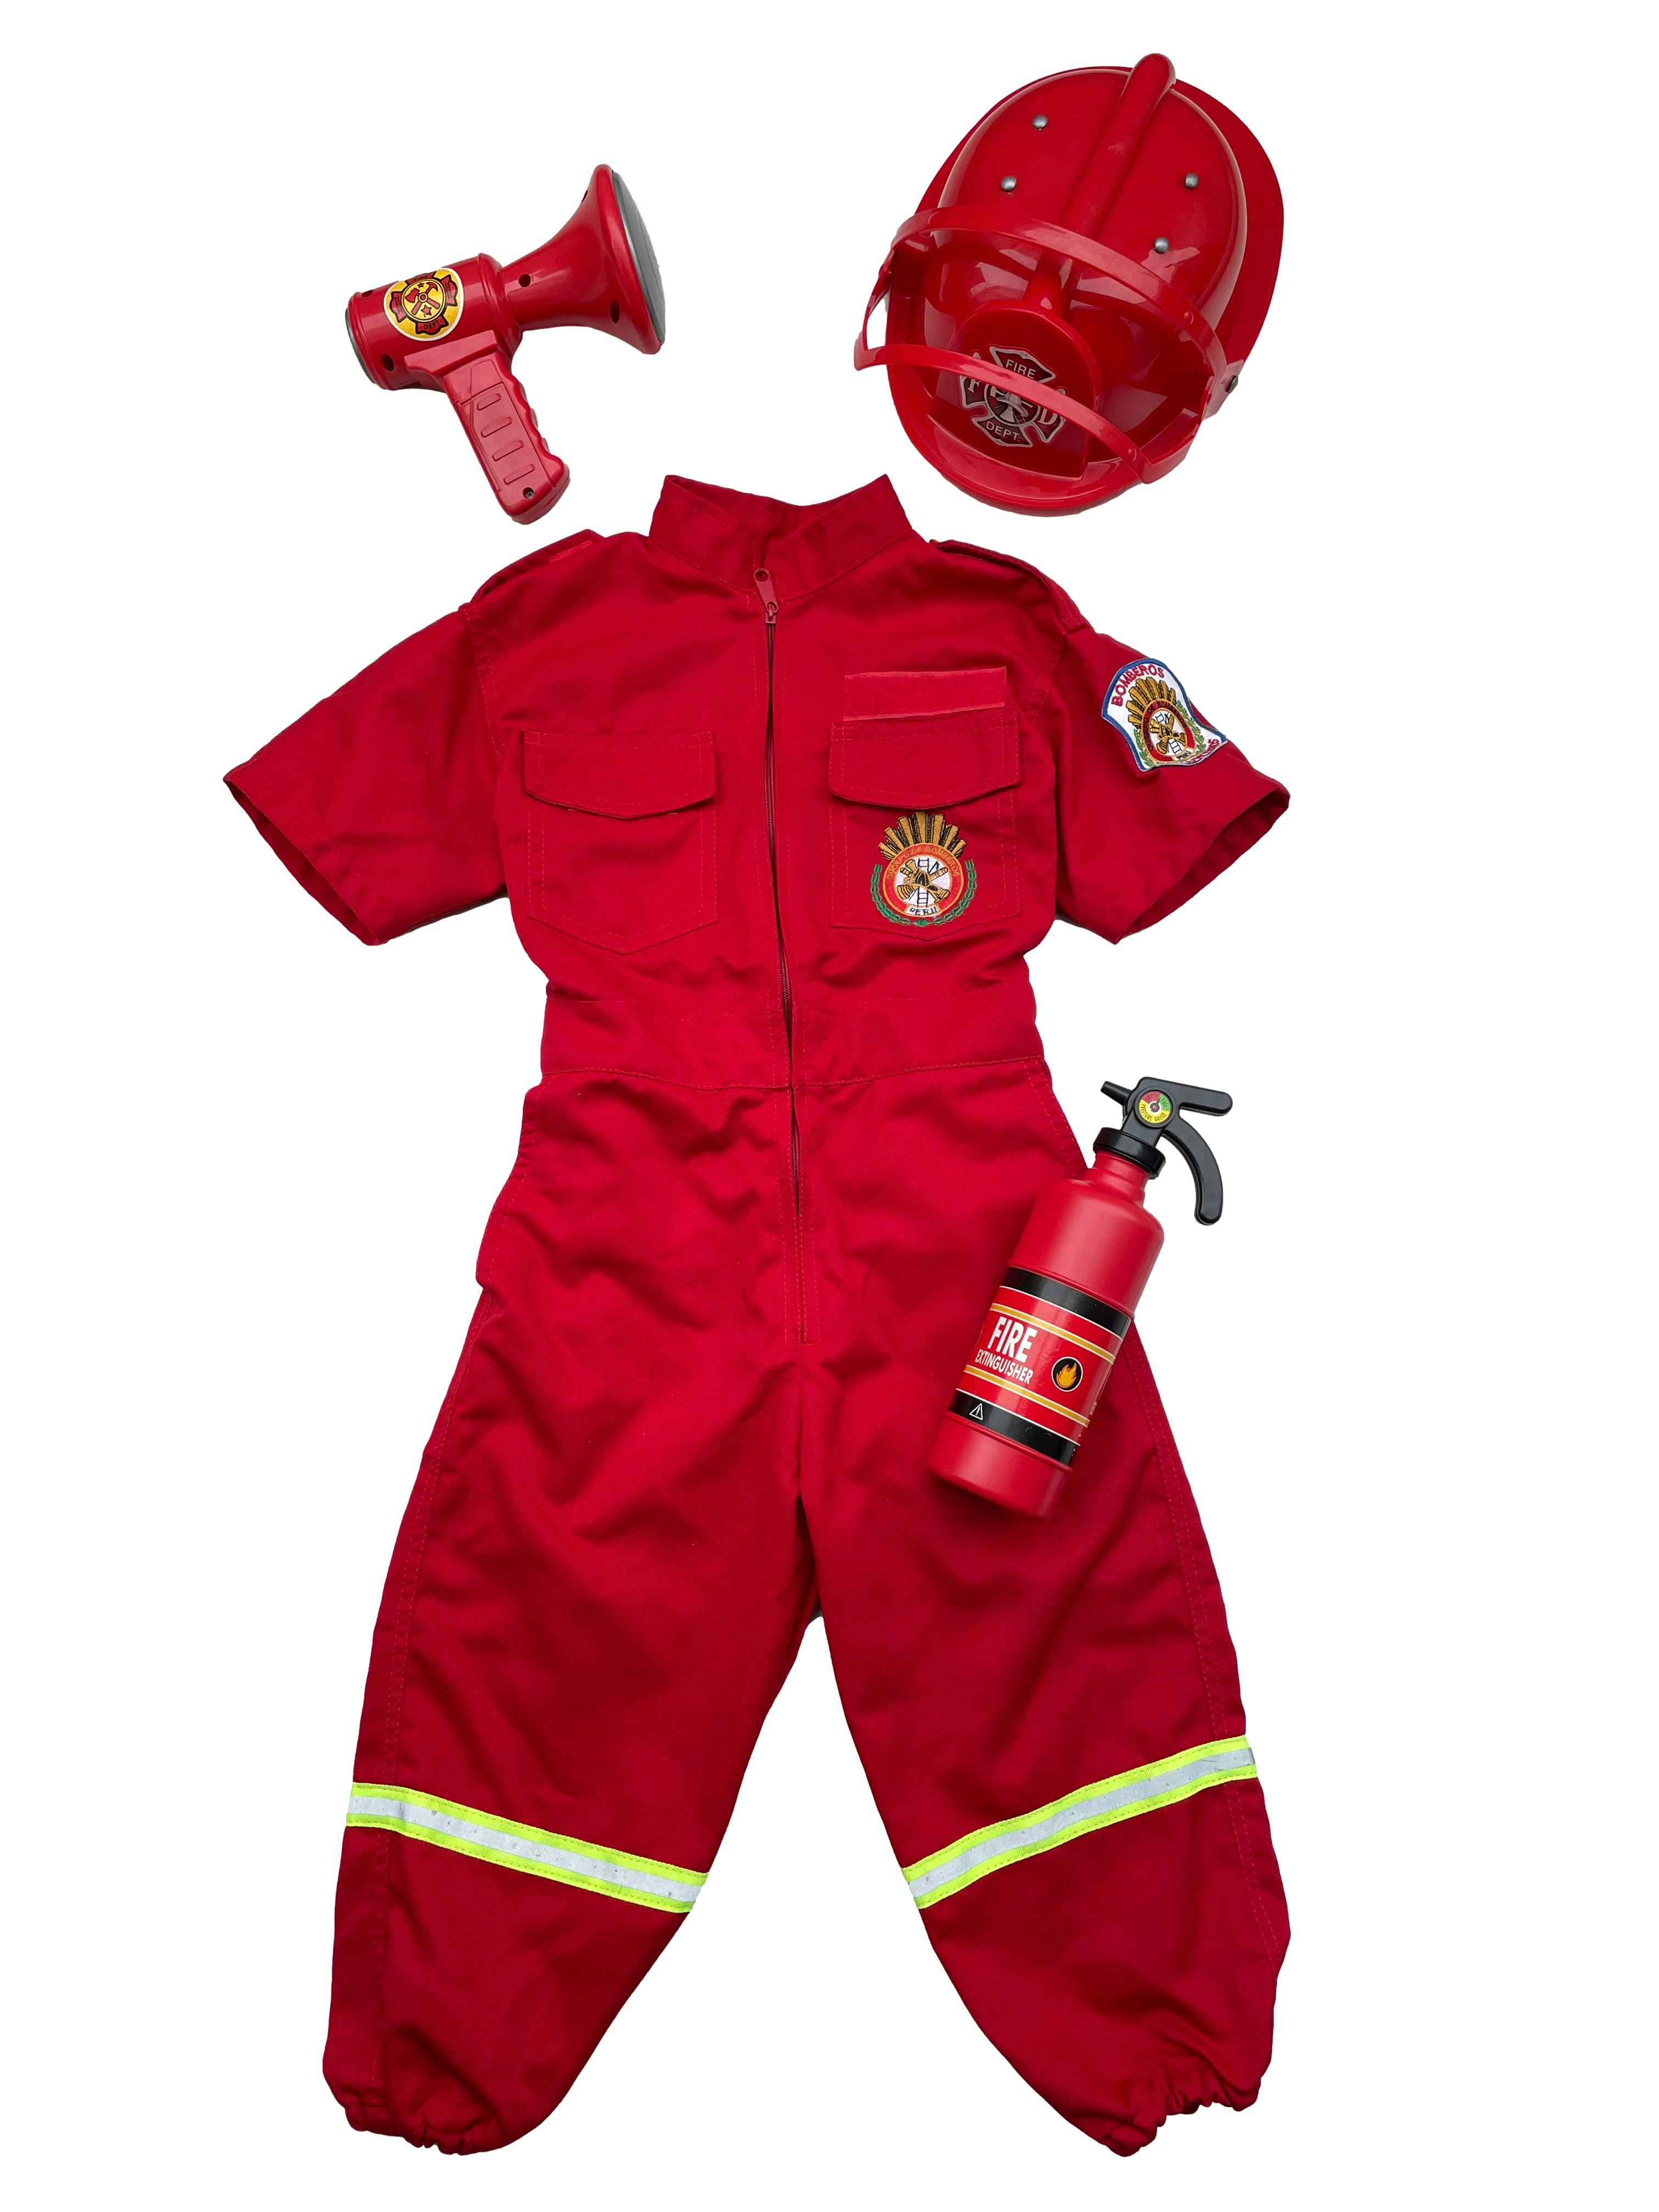 Disfraz bombero incluye enterizo, casco, extintor y bocina